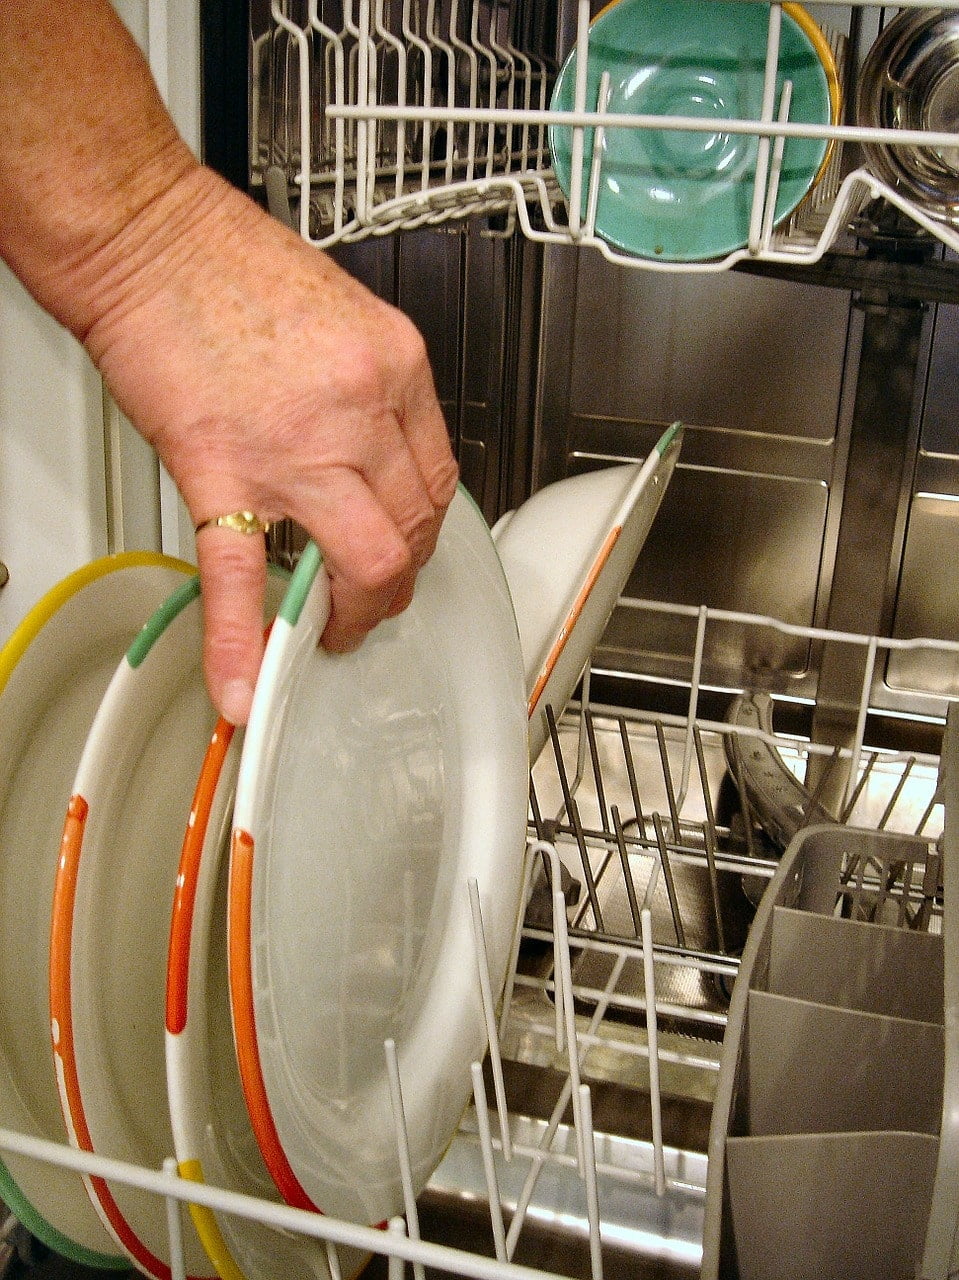 loading a dishwasher